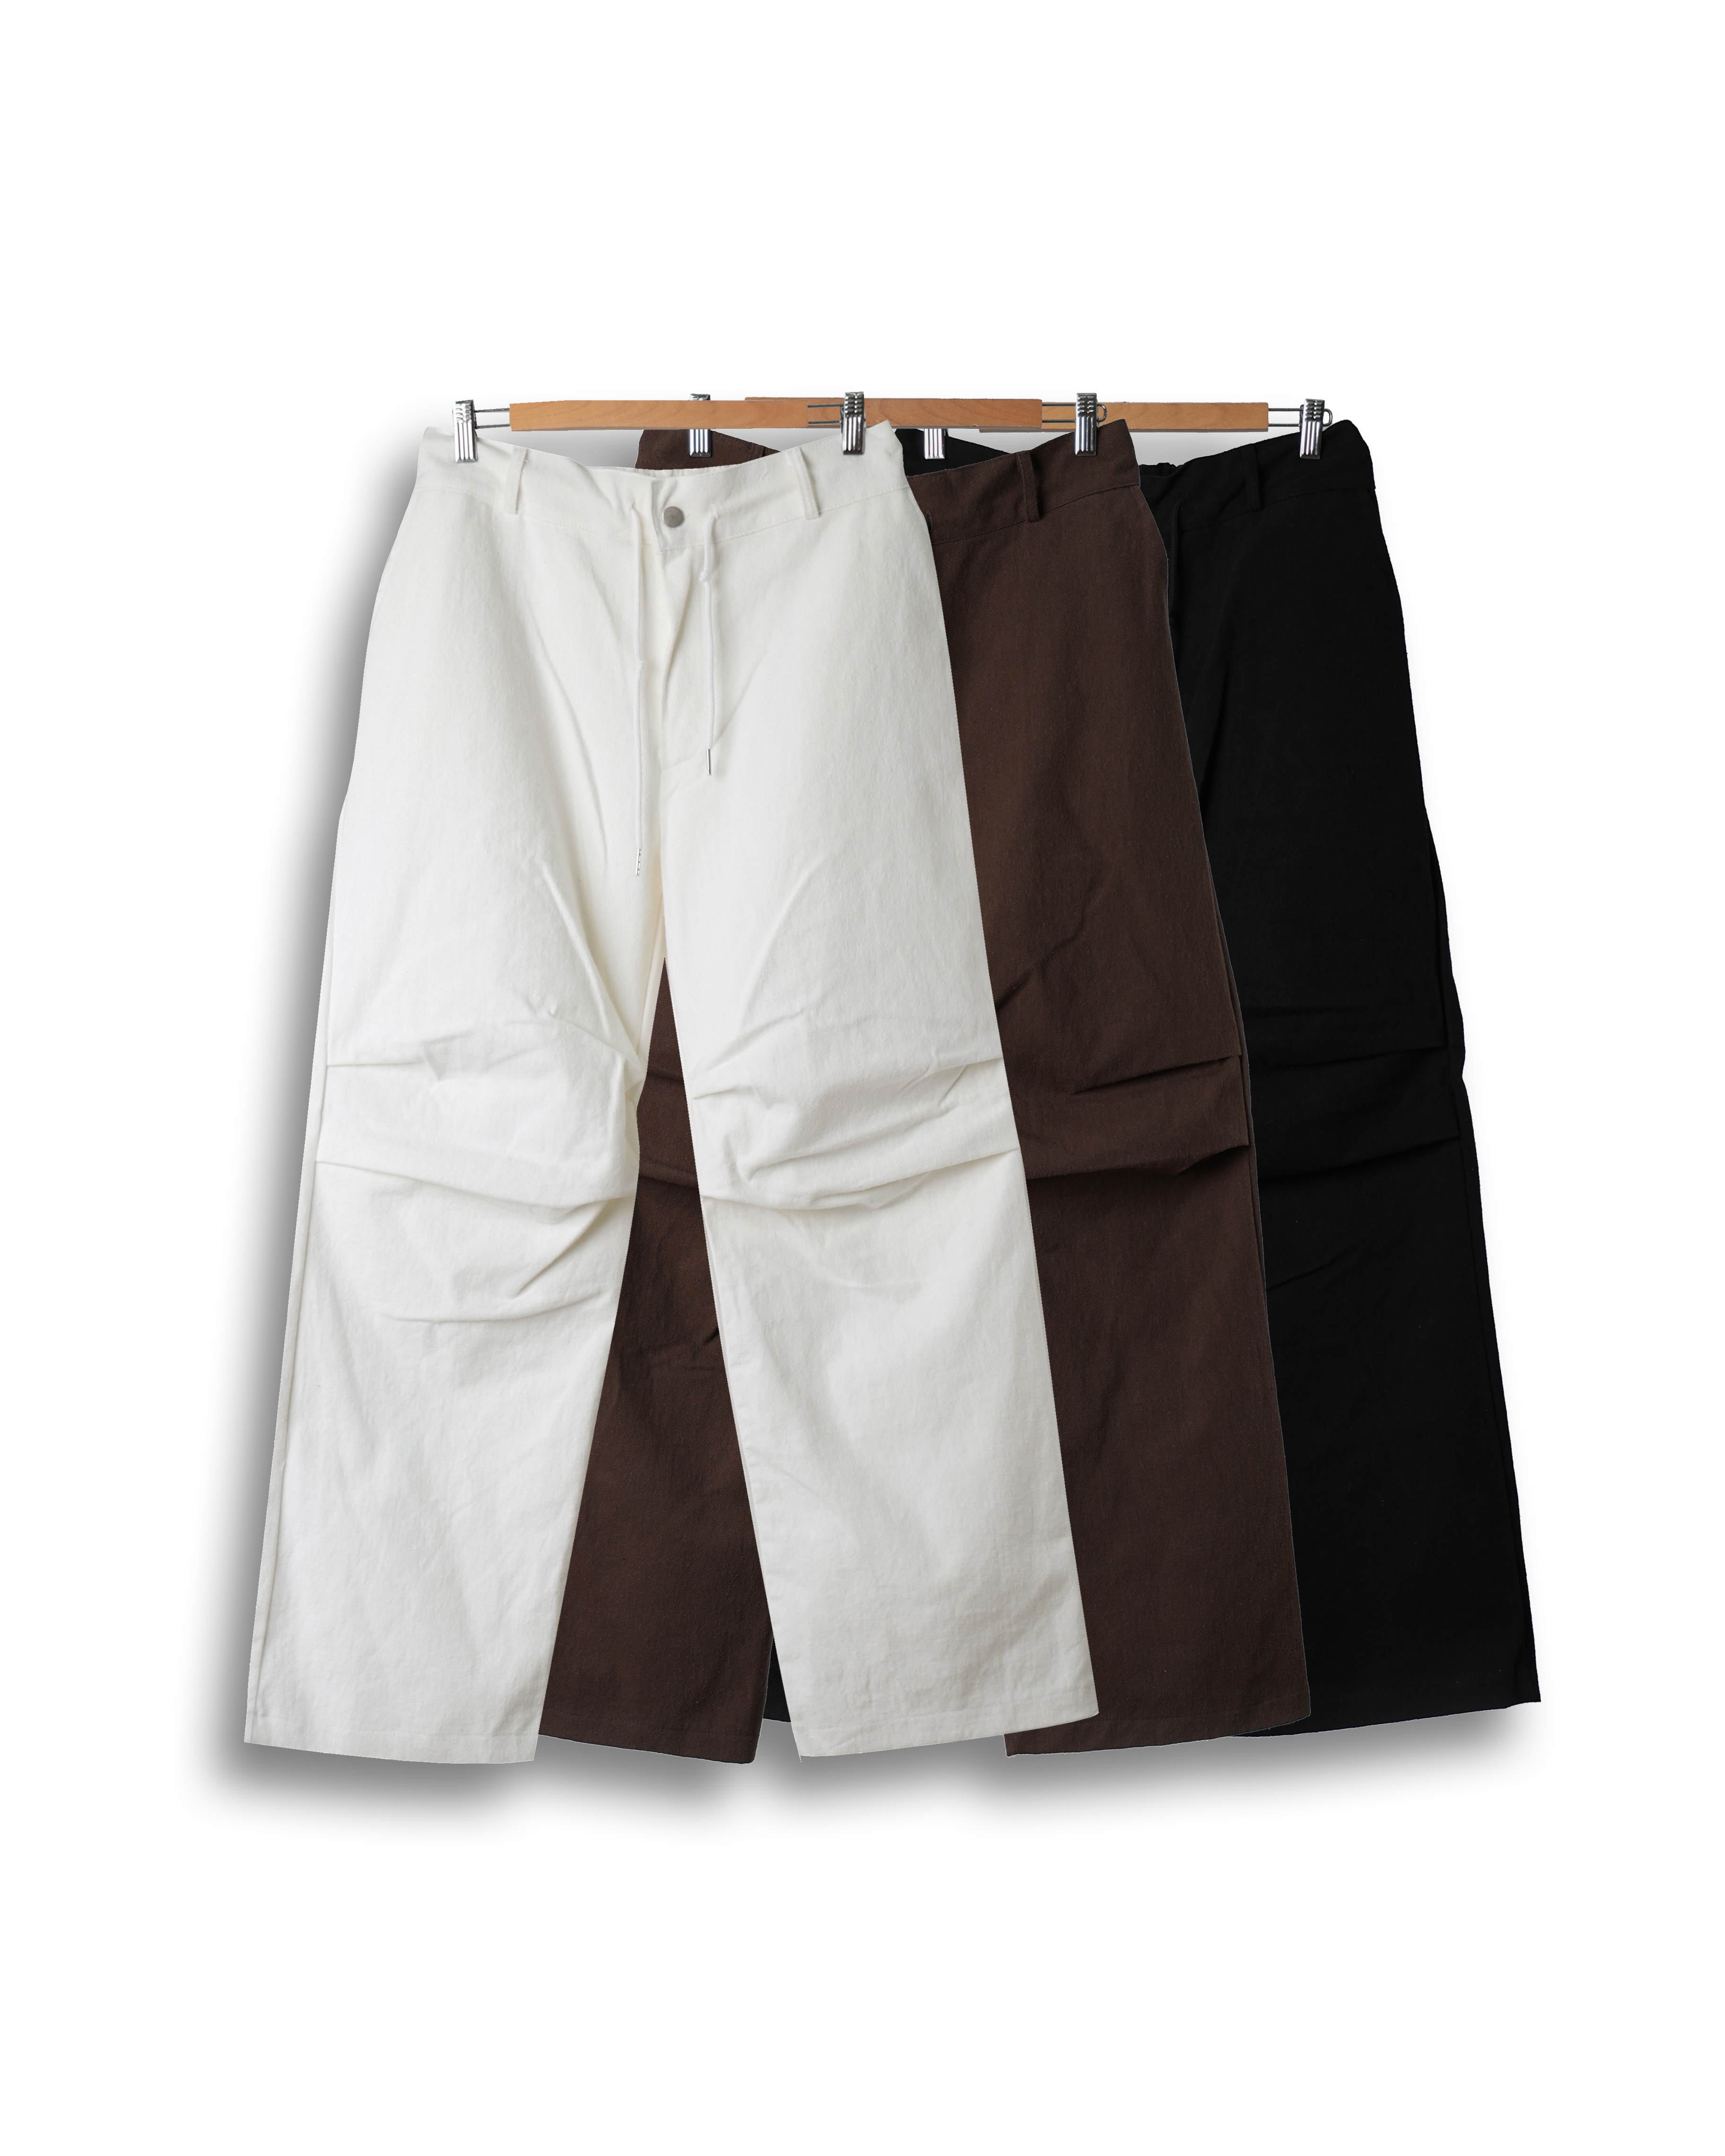 FORT RINE Cotton Pleats Parachute Pants (Black/Brown/Ivory)